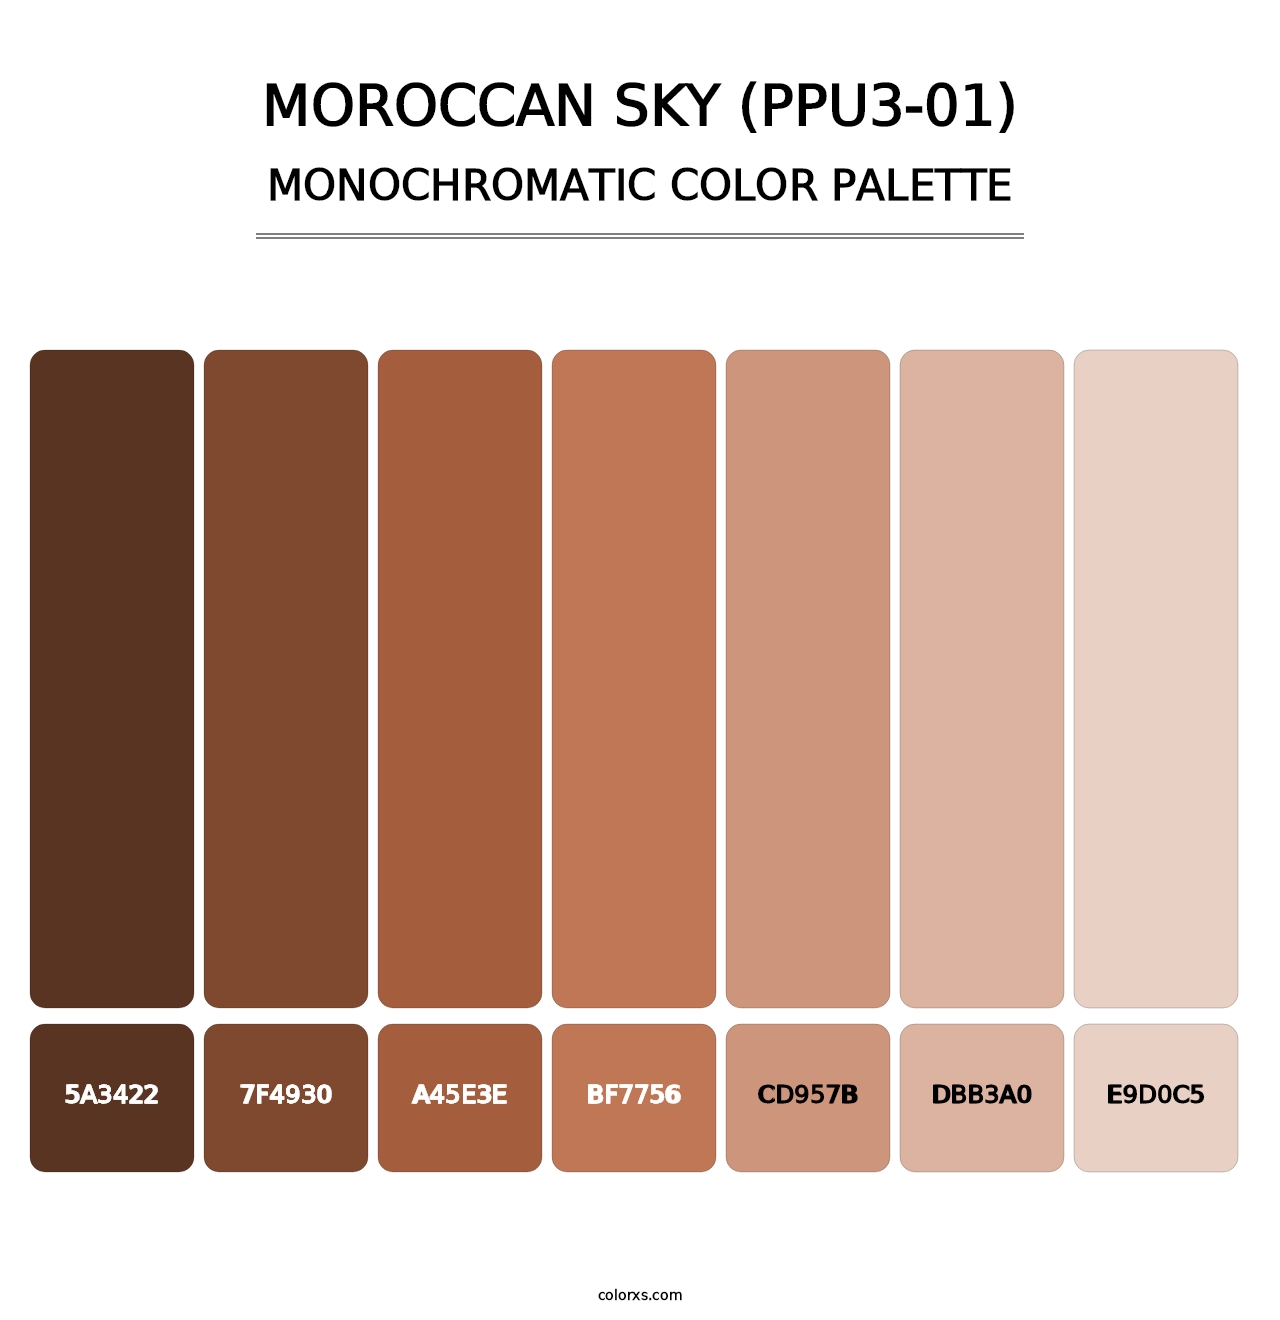 Moroccan Sky (PPU3-01) - Monochromatic Color Palette